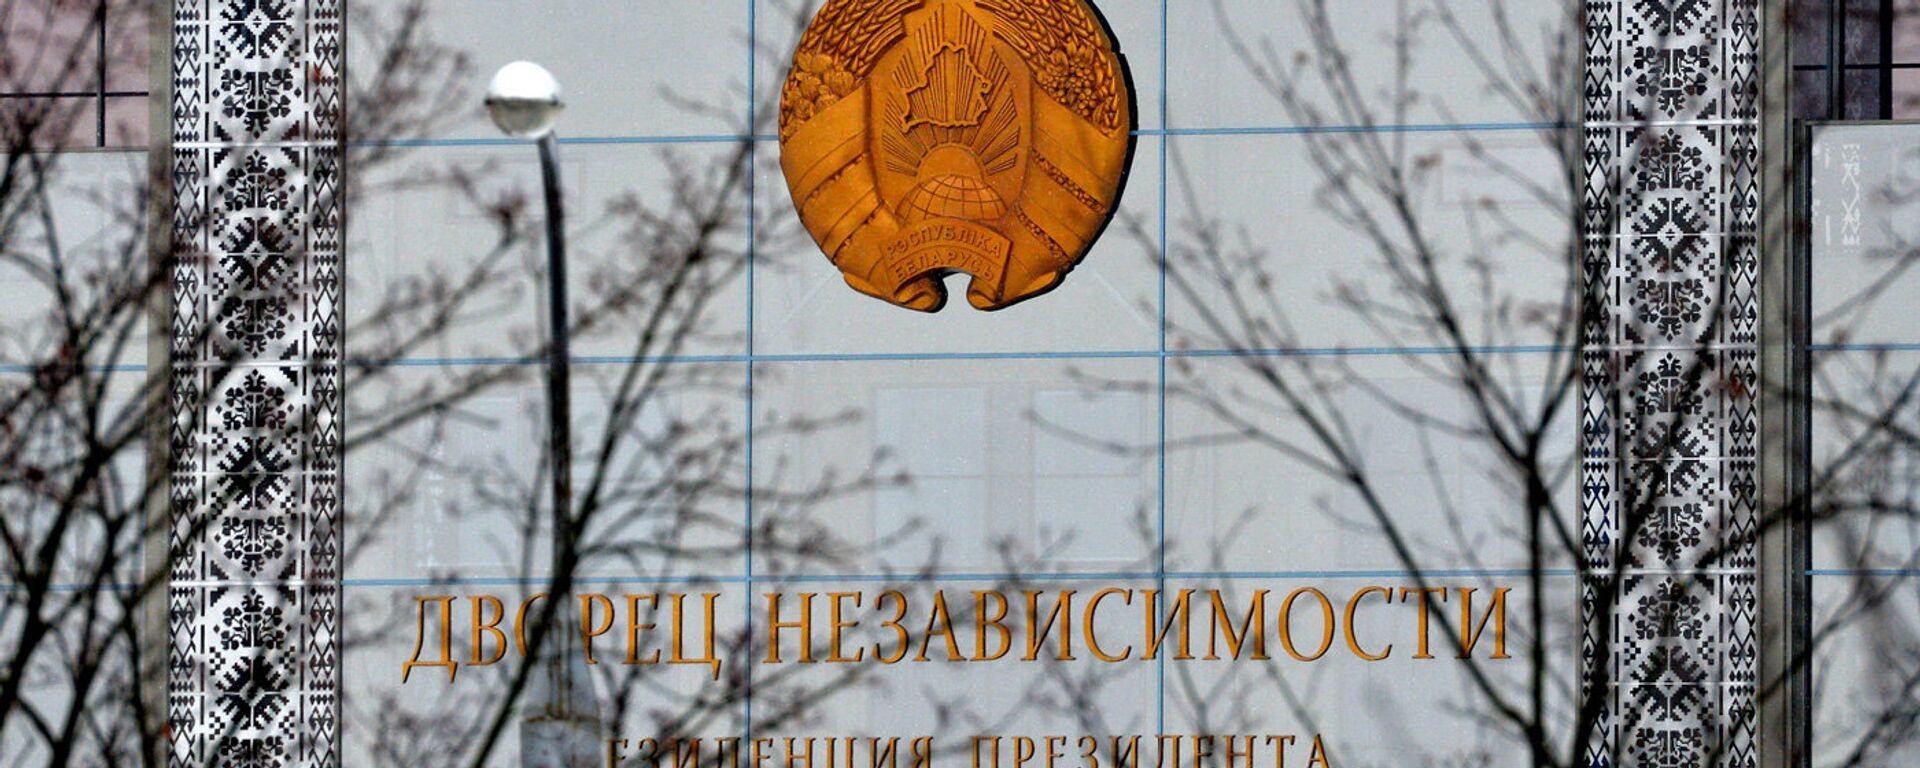 Палац Незалежнасці - Sputnik Беларусь, 1920, 30.03.2021